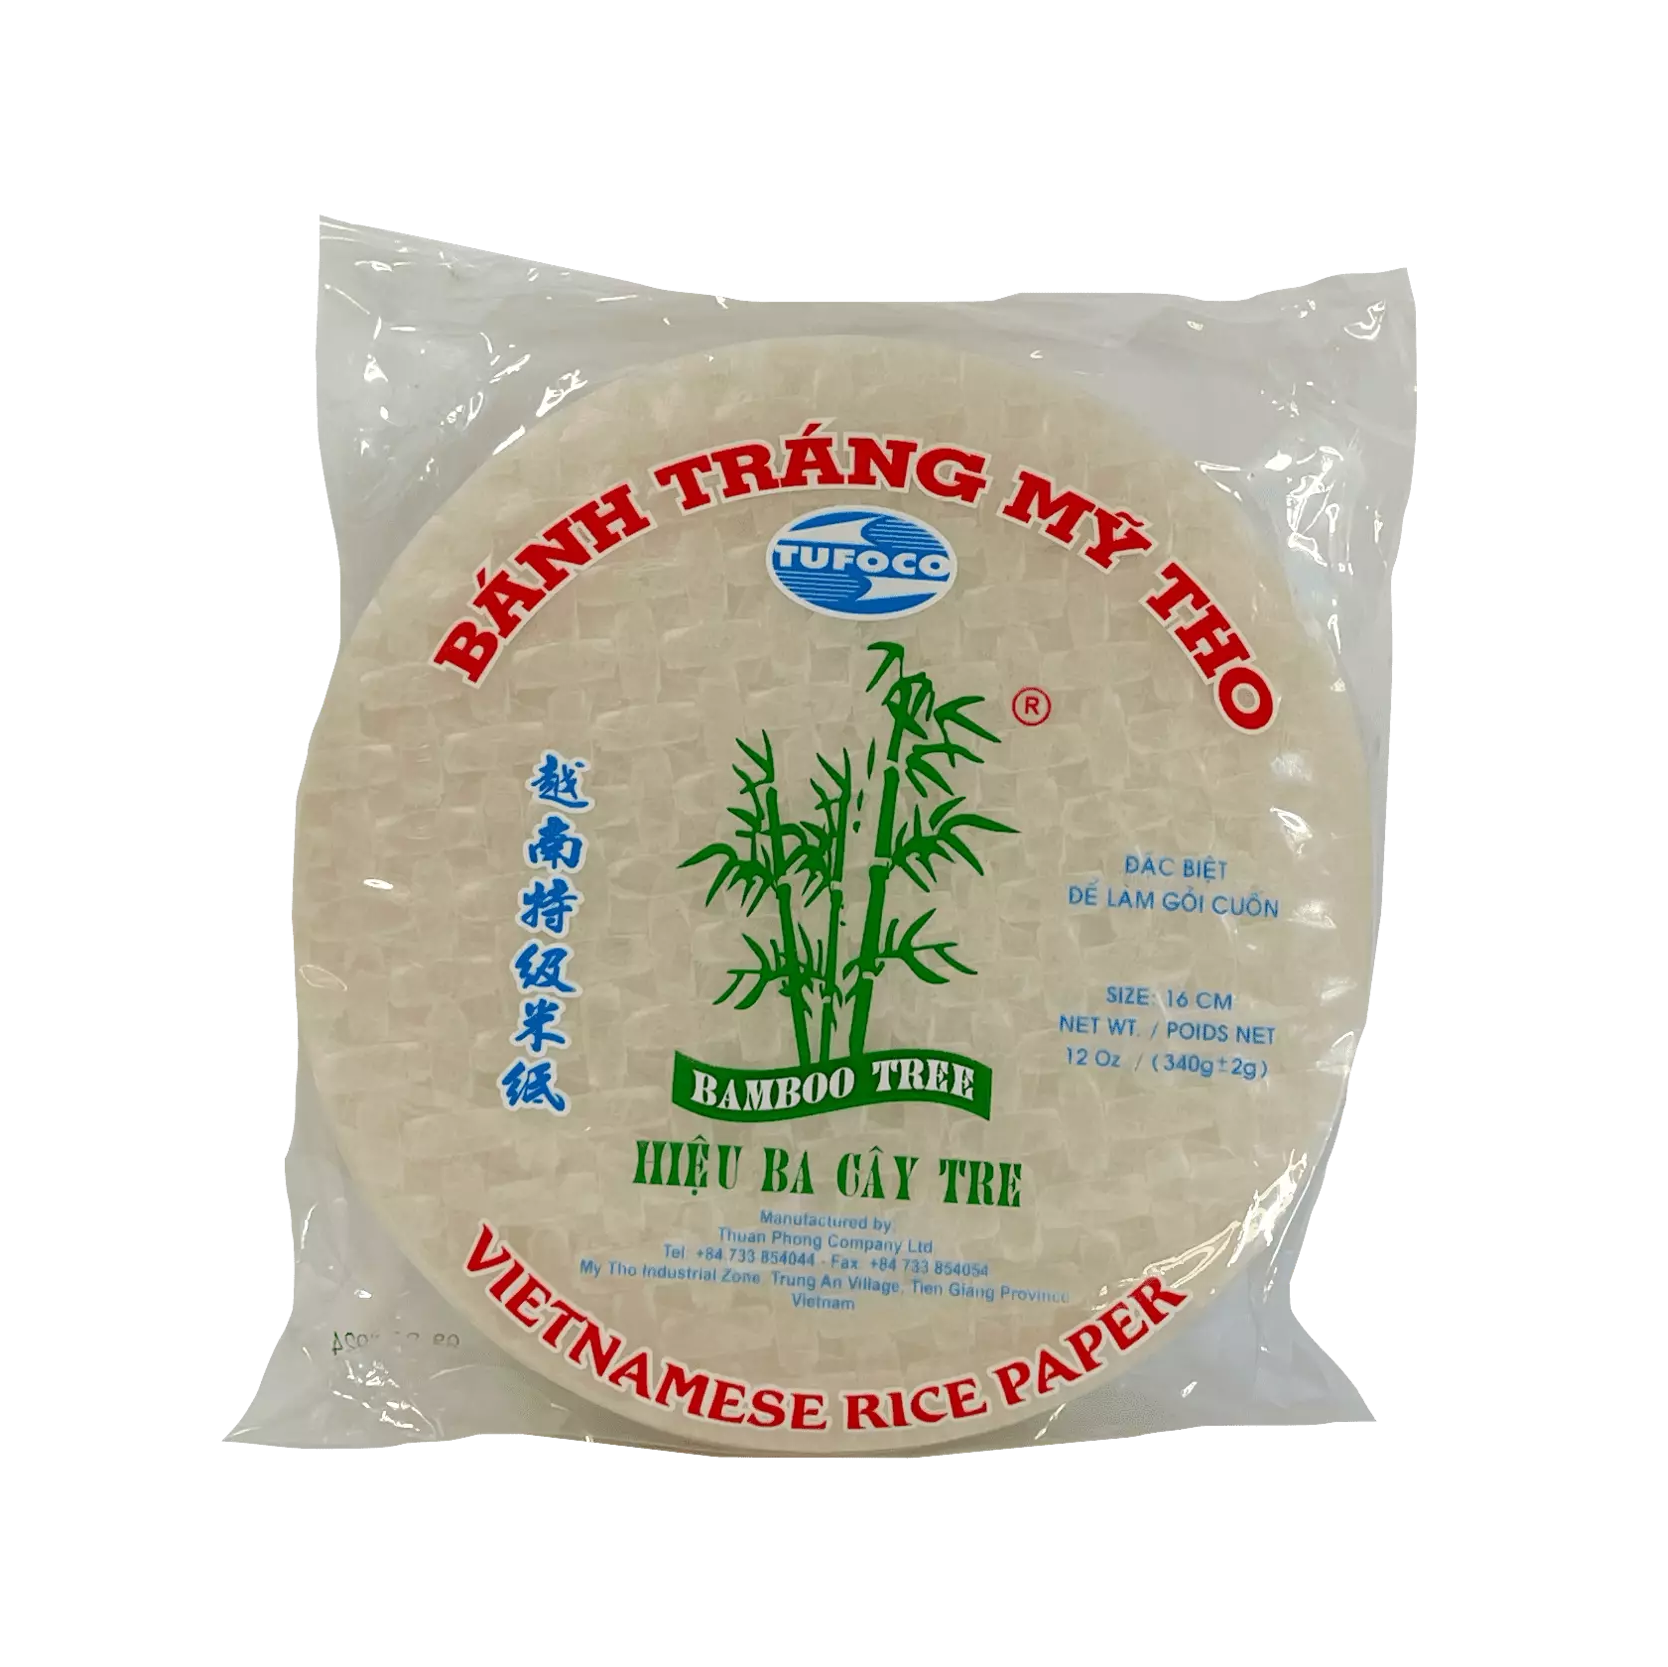 Rice Paper Round 16cm 340g Bamboo Tree Fry Vietnam